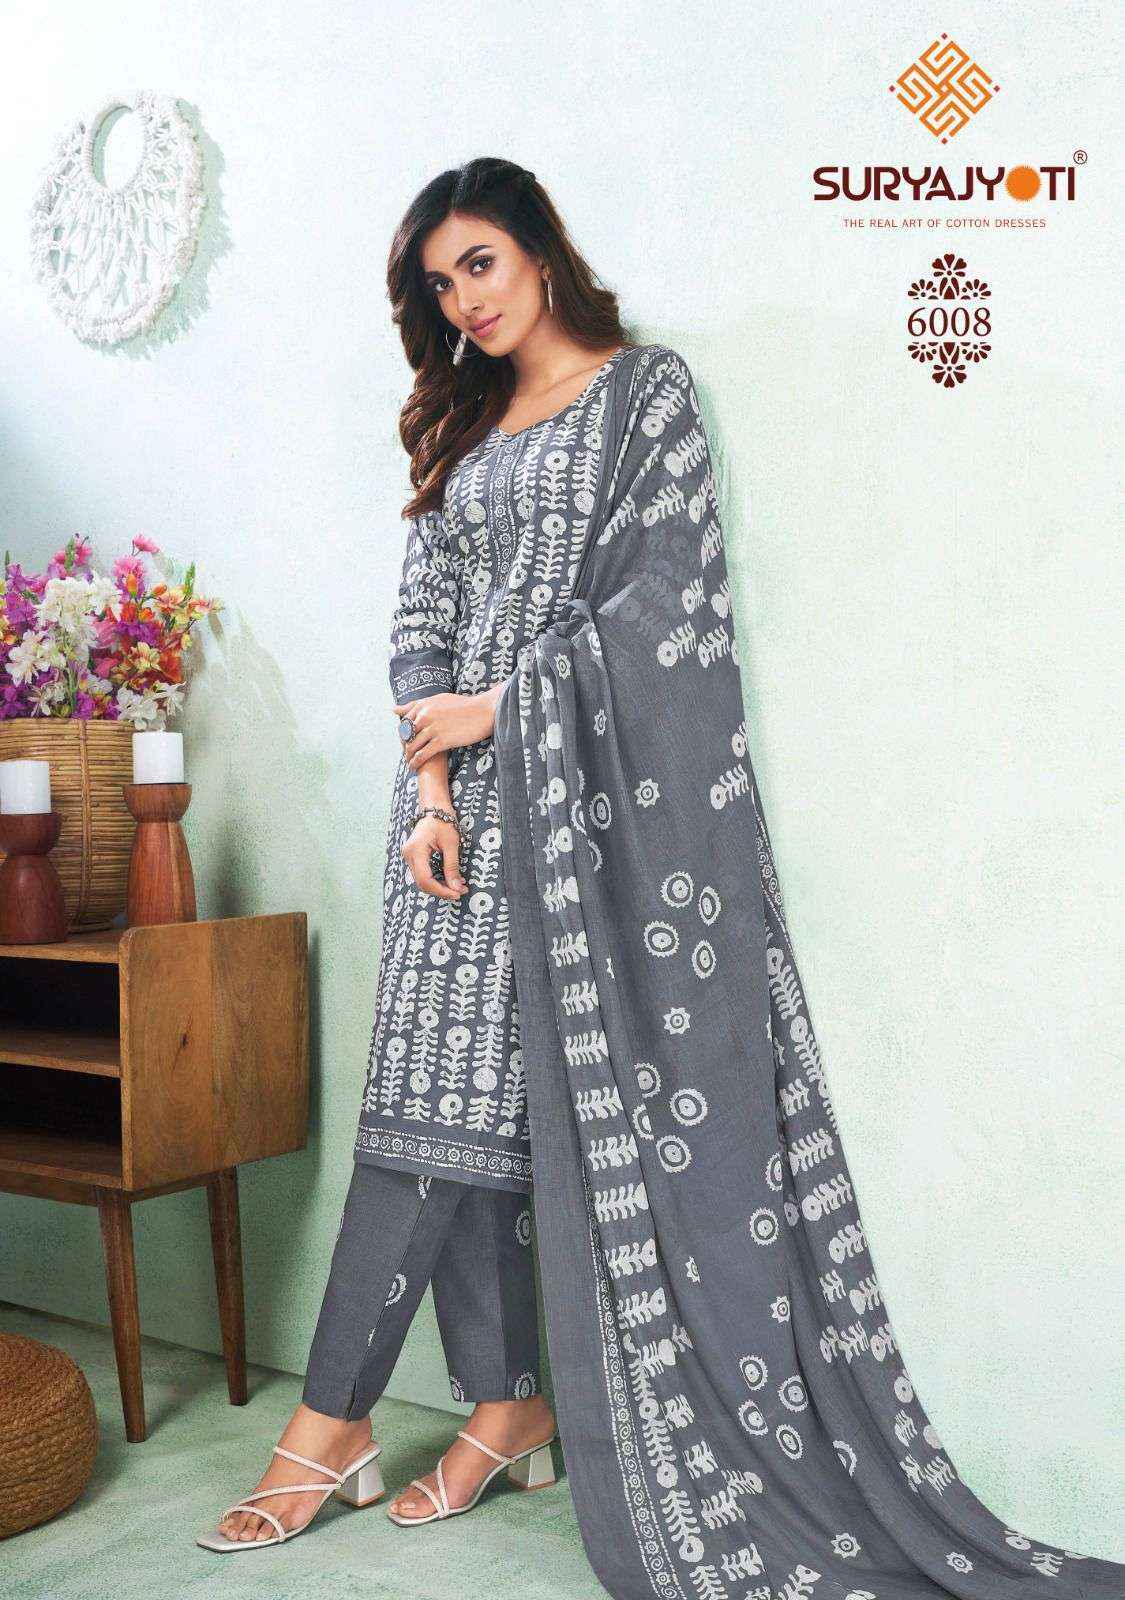 Suryajyoti Pehnava Vol 6 Cambric Cotton Dress Material 10 pcs Catalogue